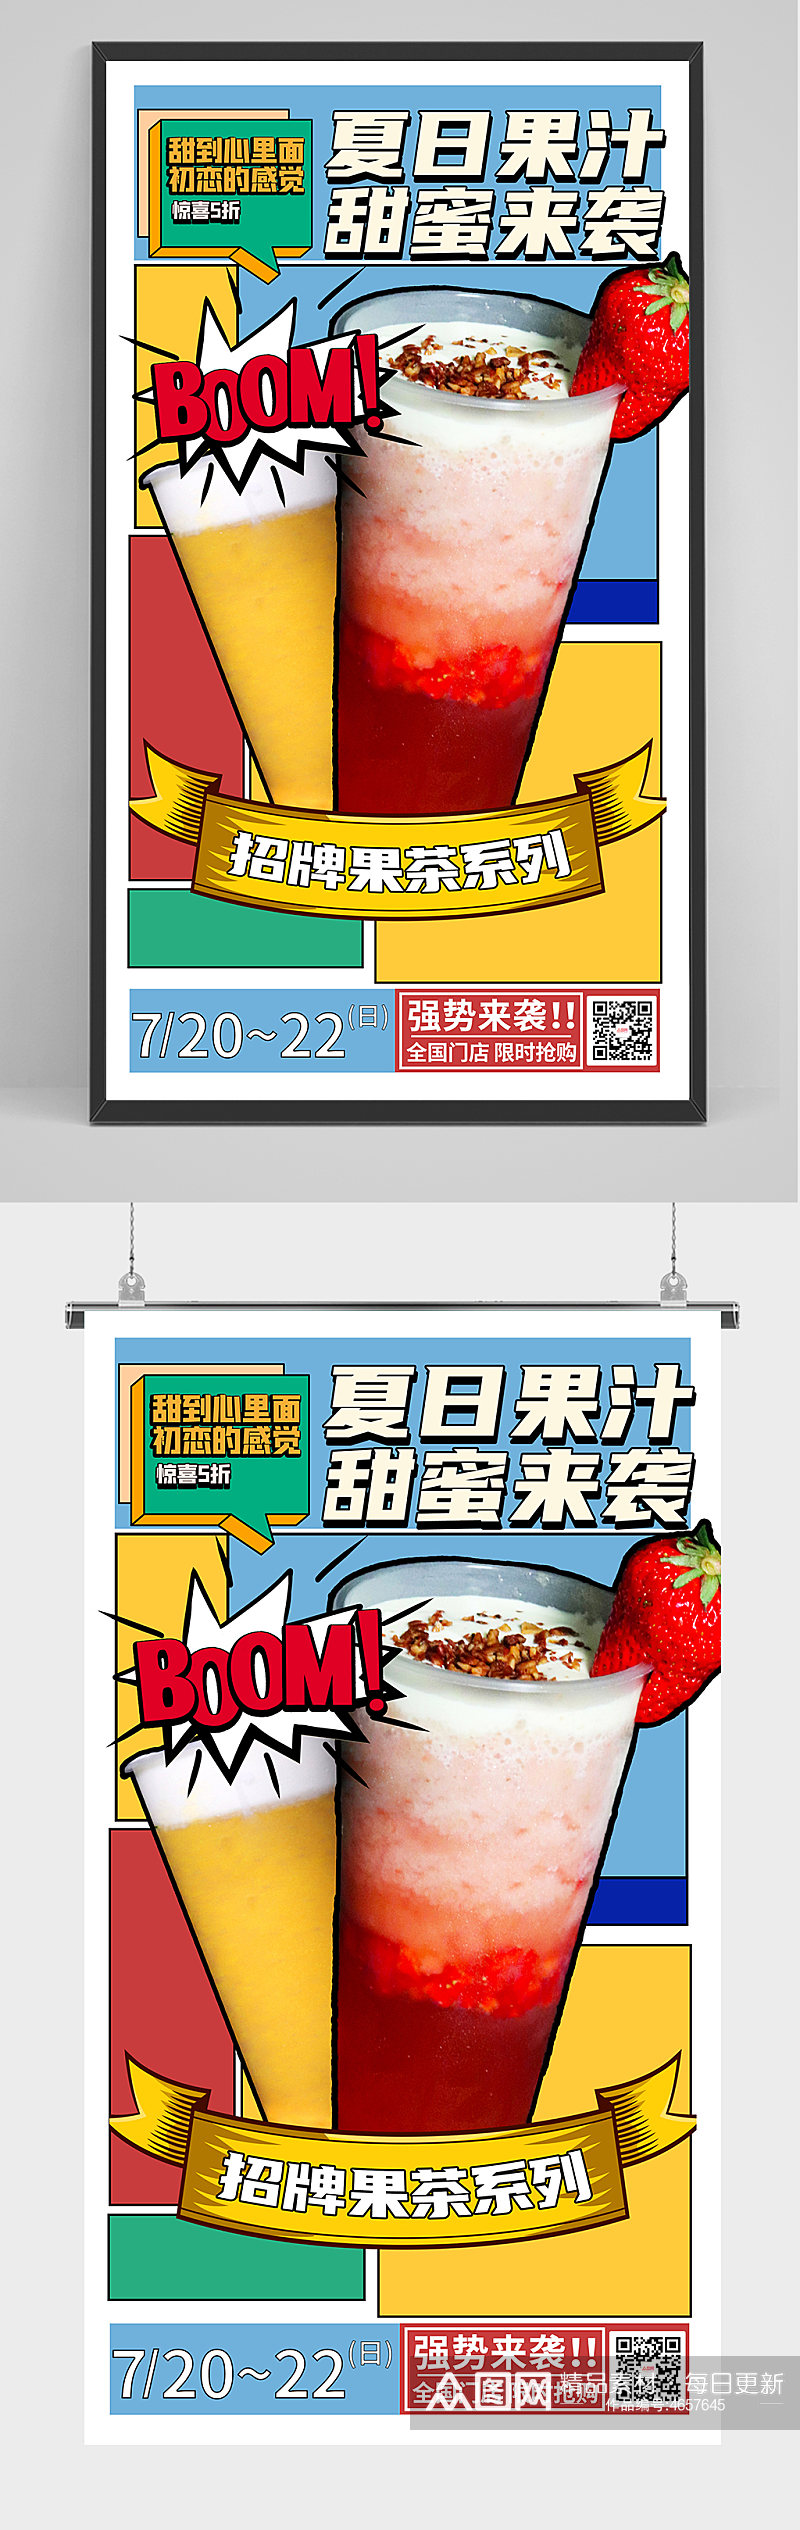 夏季夏天水果饮料饮品店美食菜单波普风海报素材